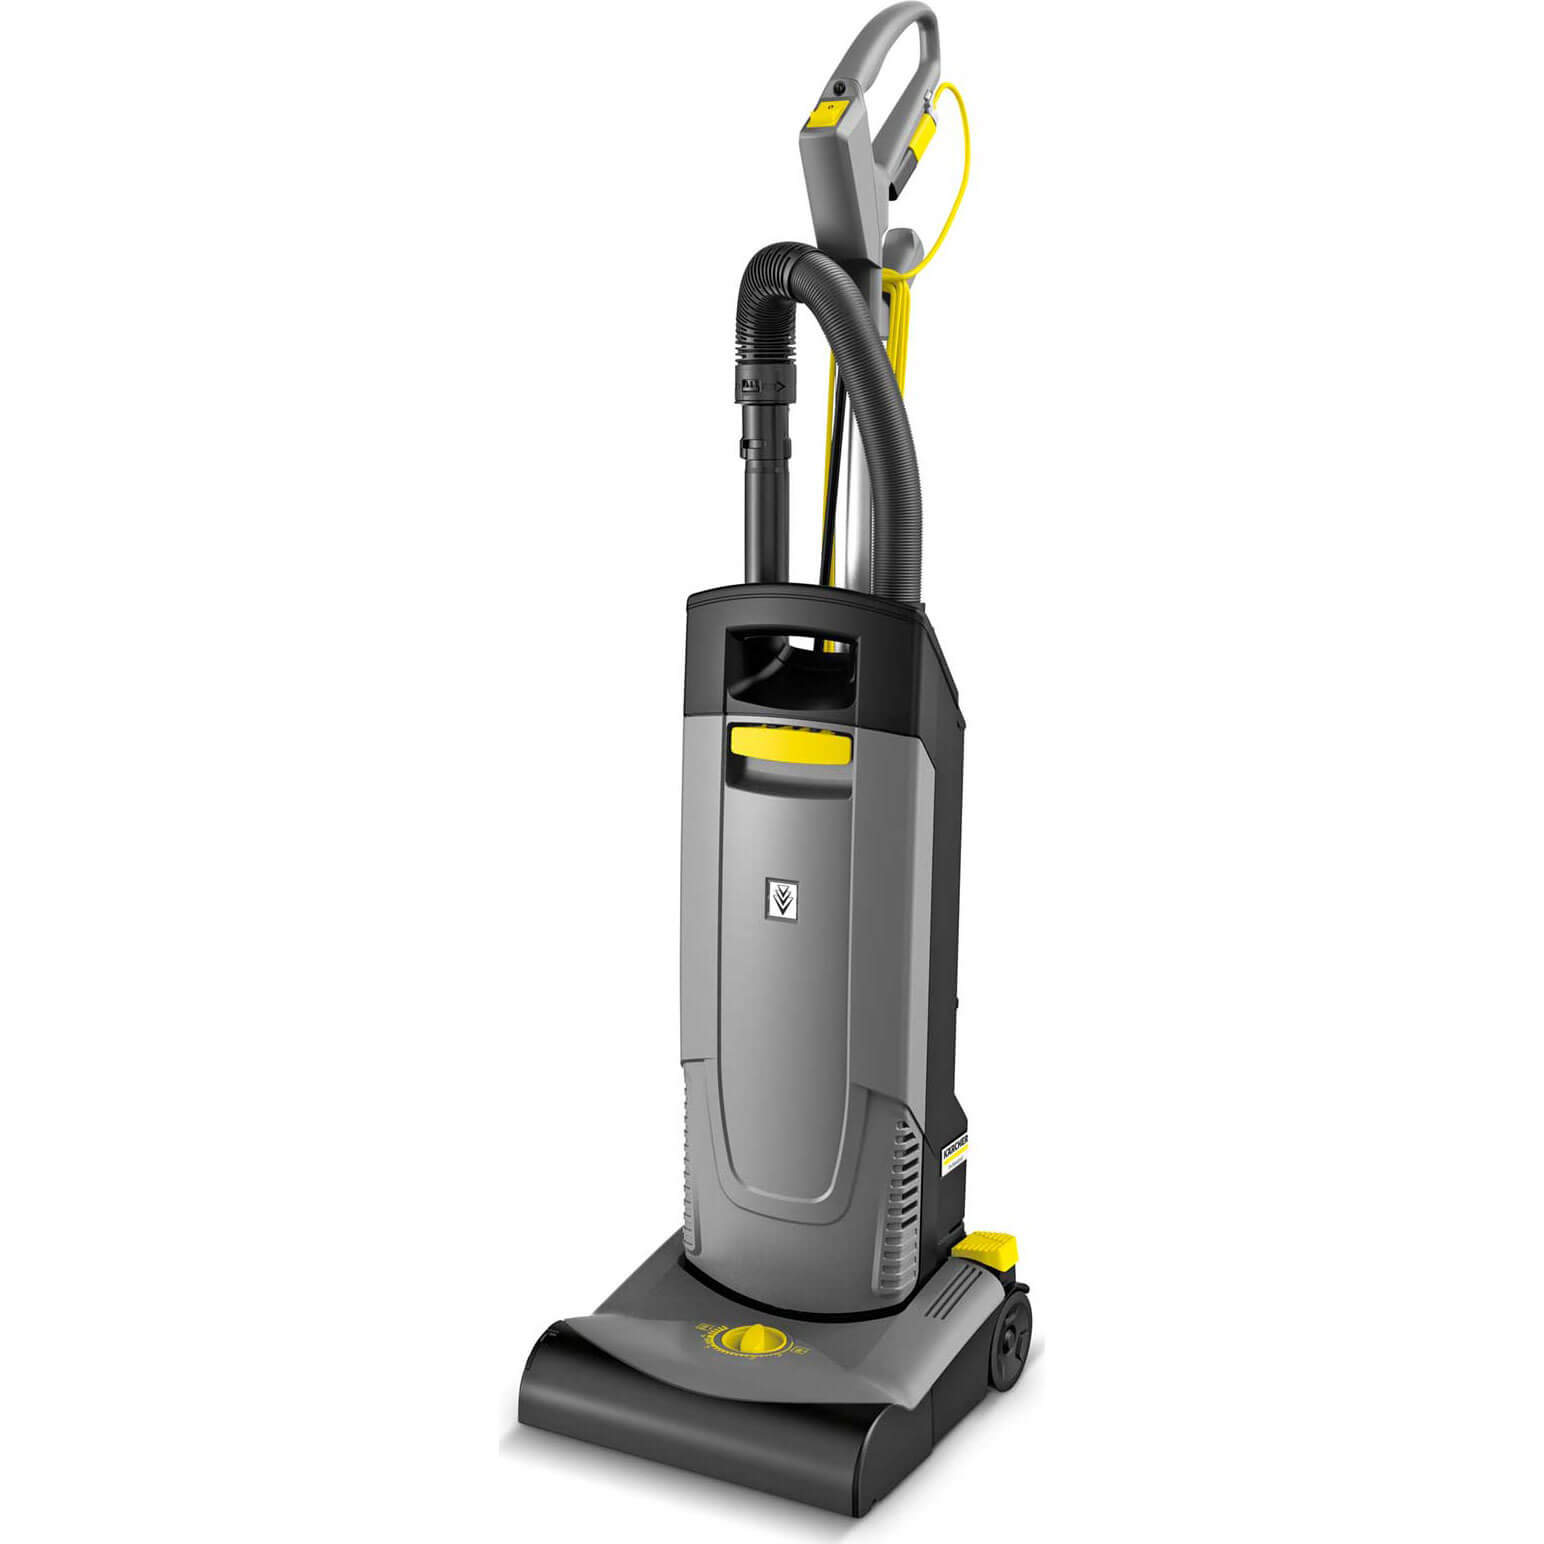 Image of Karcher CV 30/1 Professional Upright Vacuum Cleaner 240v